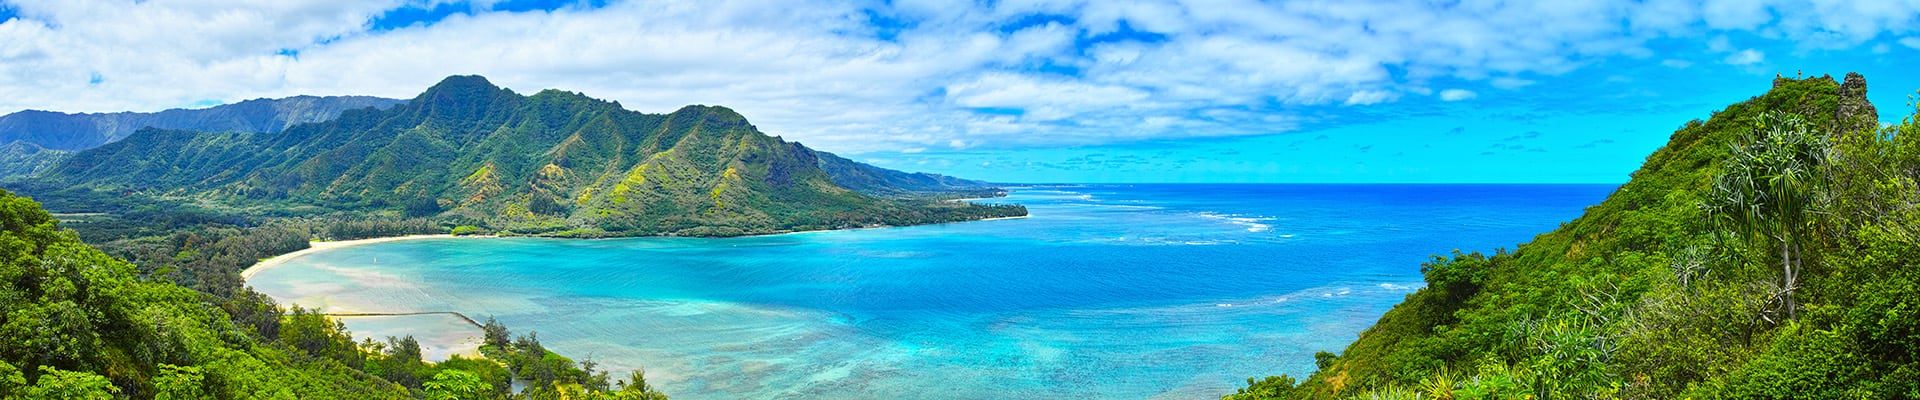 hawaiian cruise